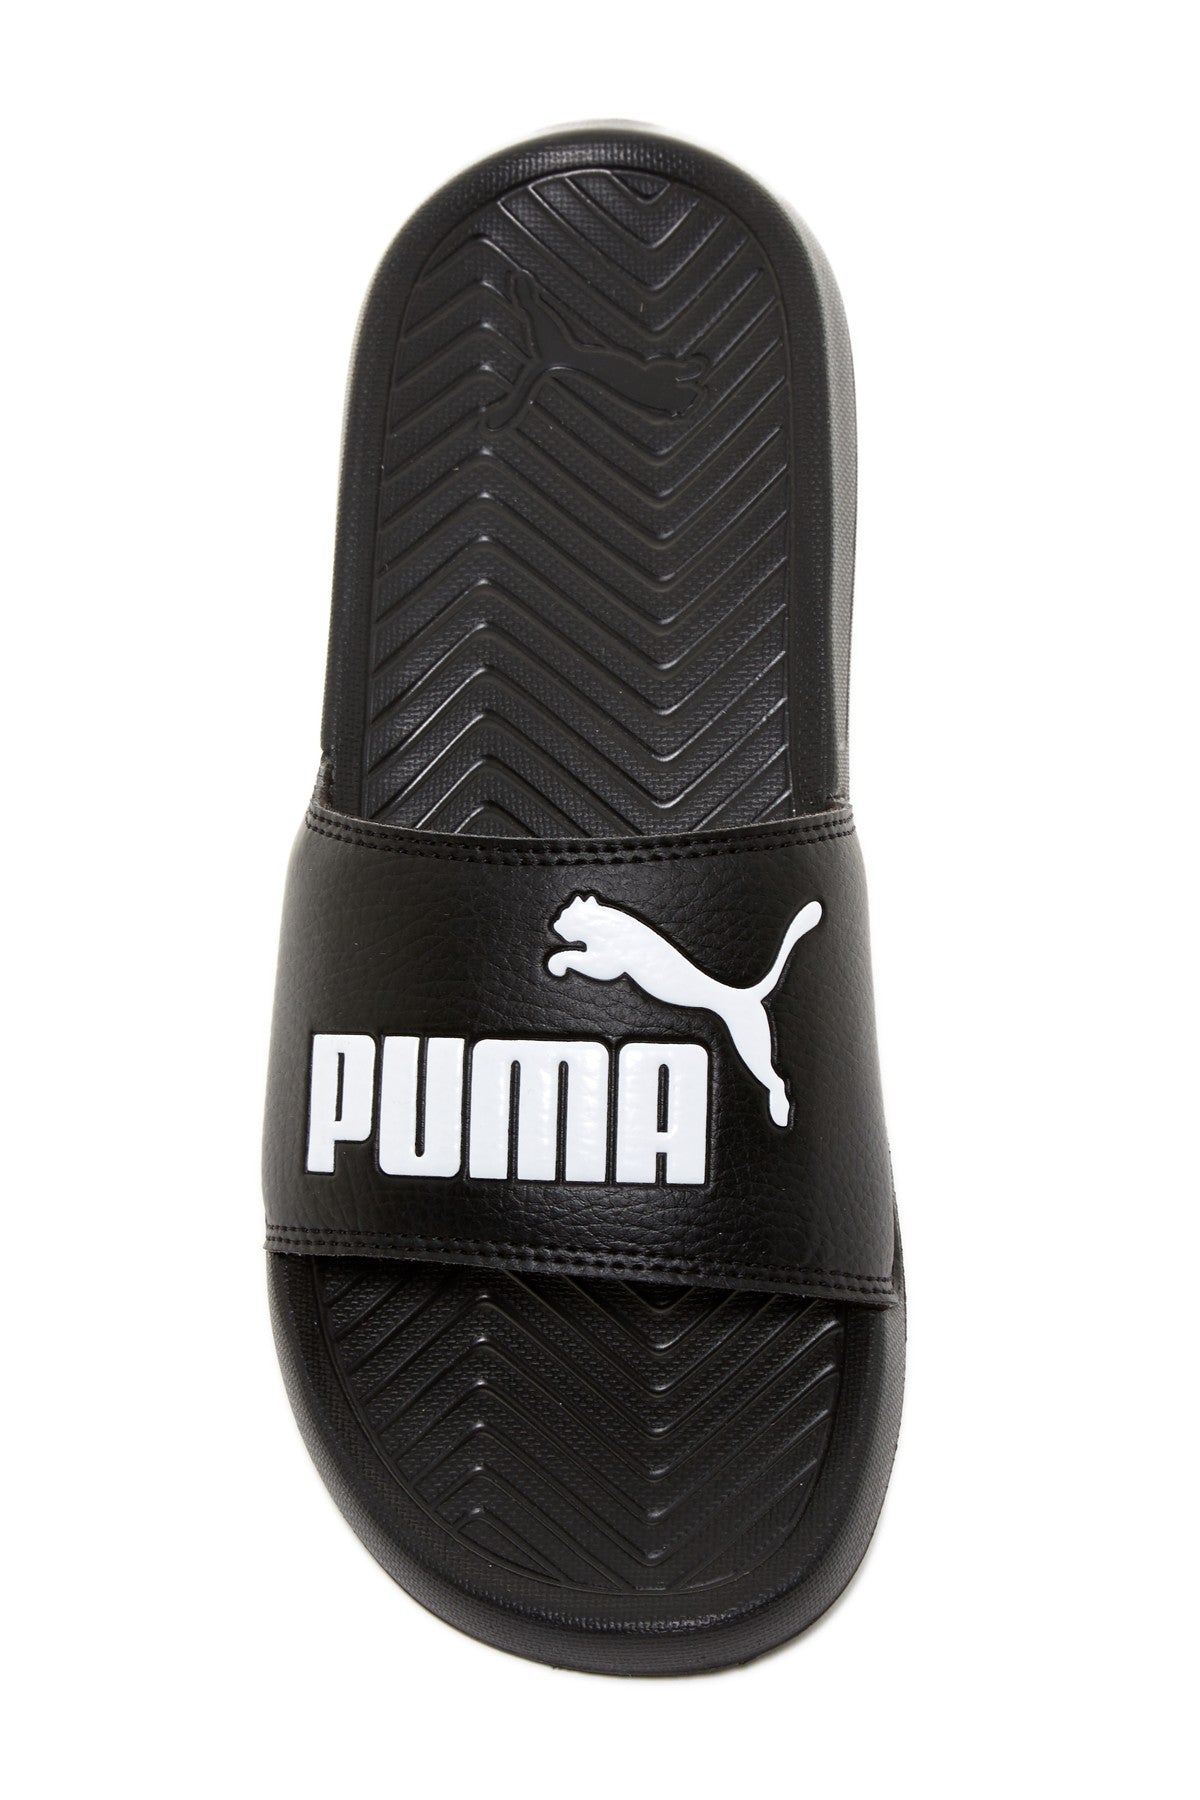 puma black and white slides